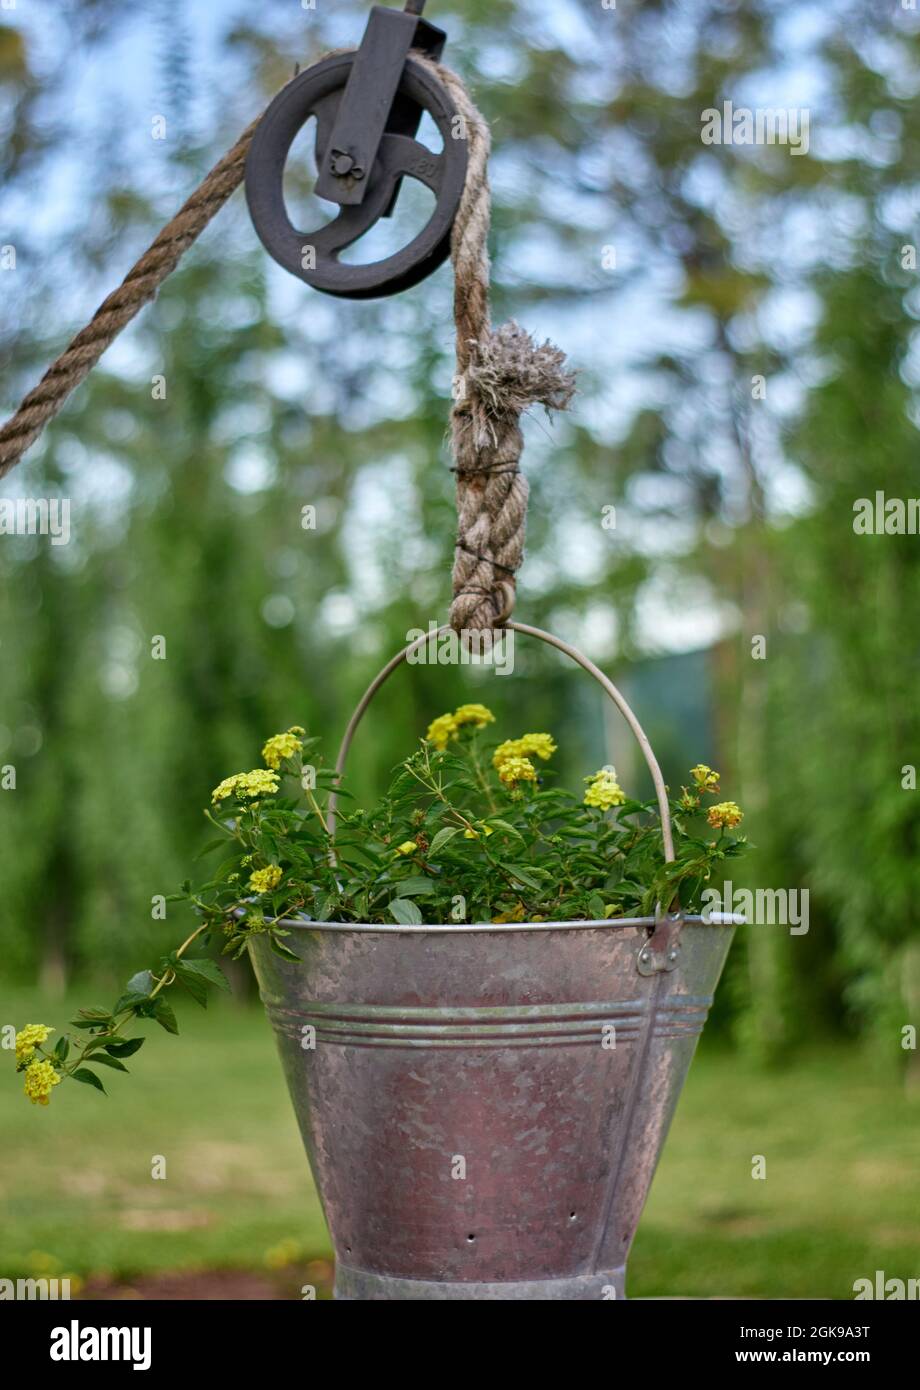 Aluminiumeimer mit gelben Blumen, die an einem Seil an einem ungenutzten Wasserbrunnen hängen. Ornament. Grüne Pflanzen verschwimmen im Hintergrund. Stockfoto